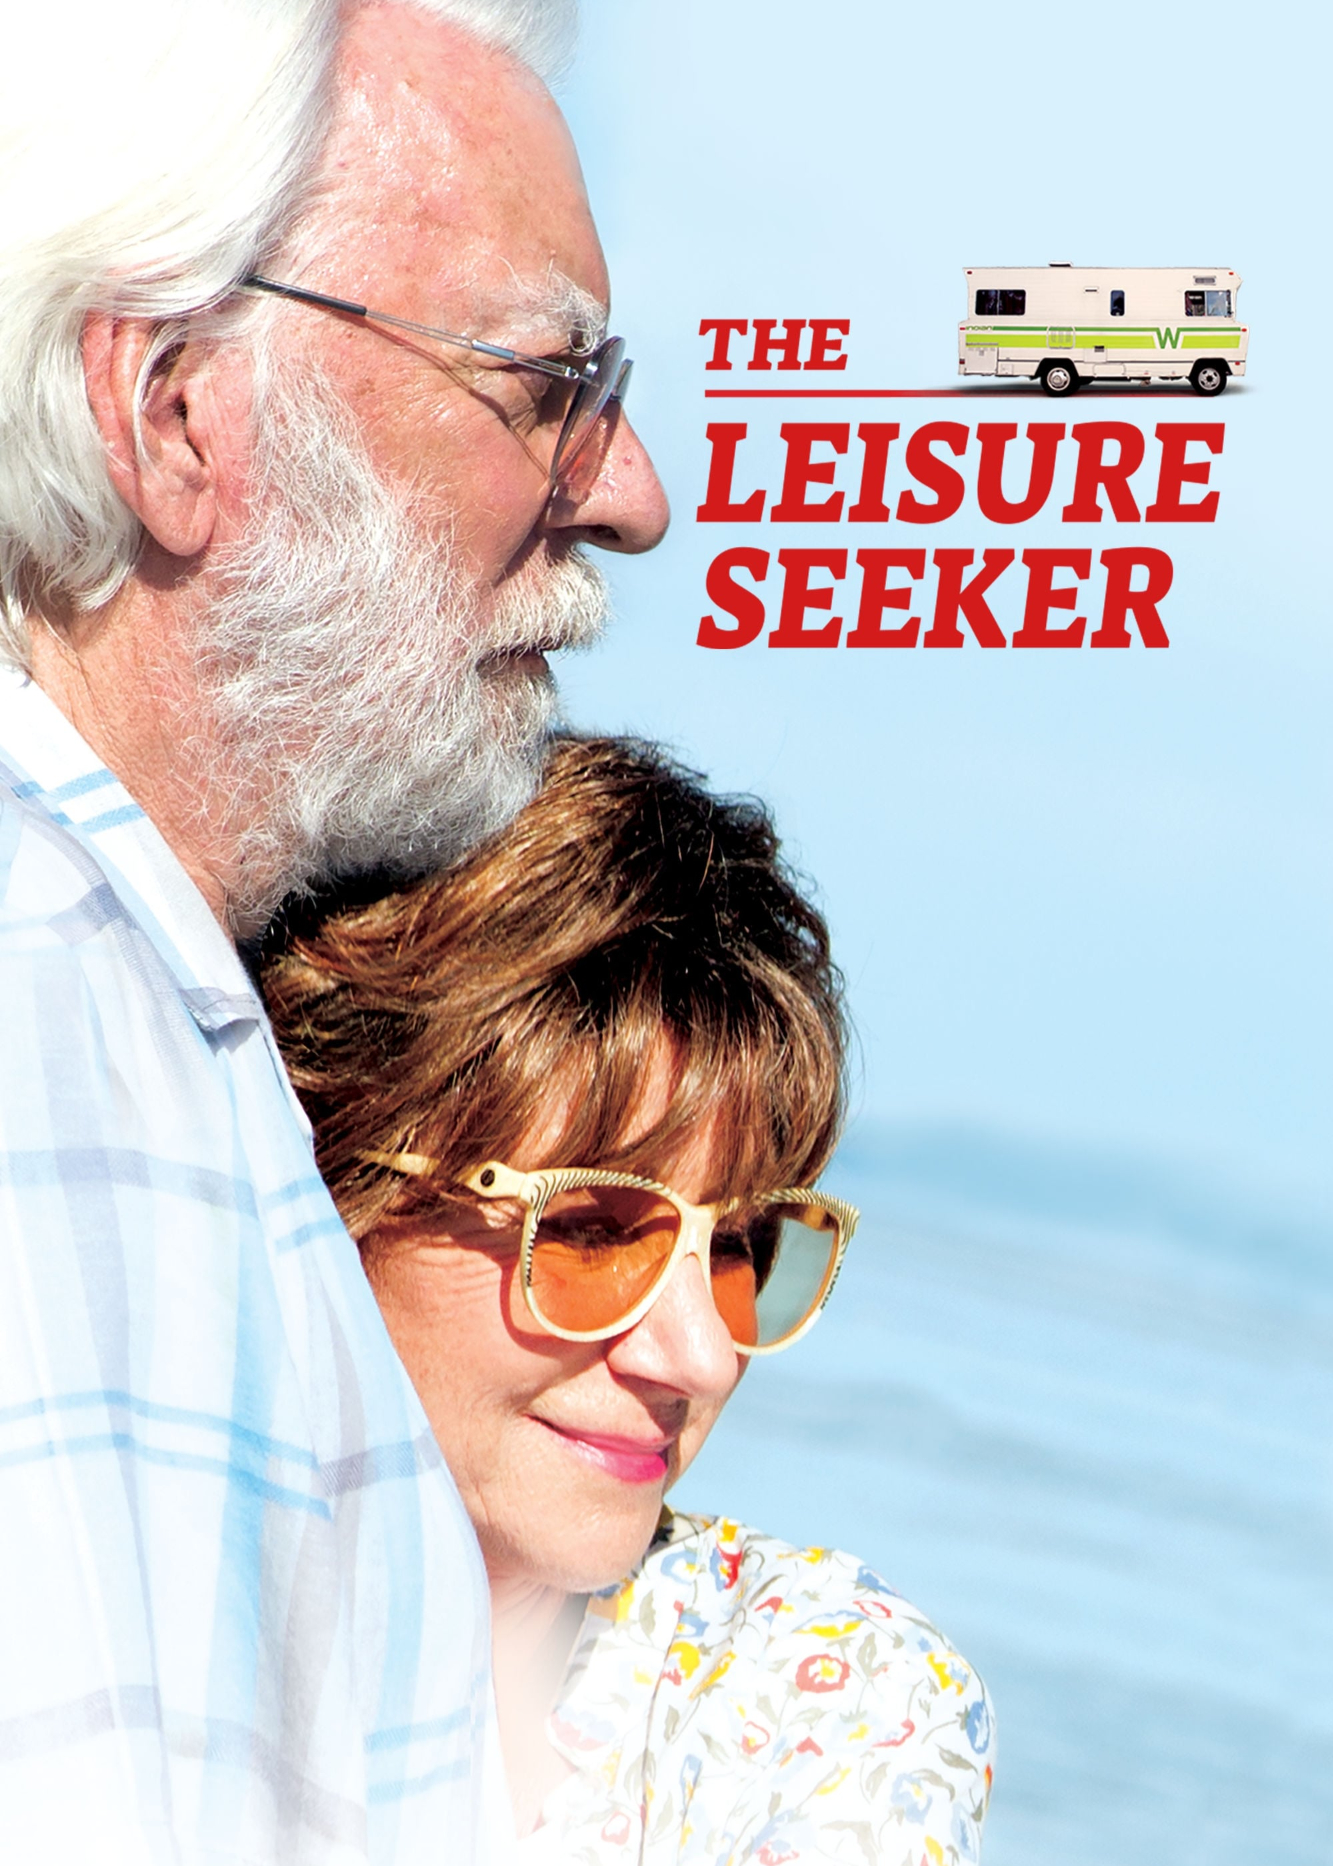 The Leisure Seeker - The Leisure Seeker